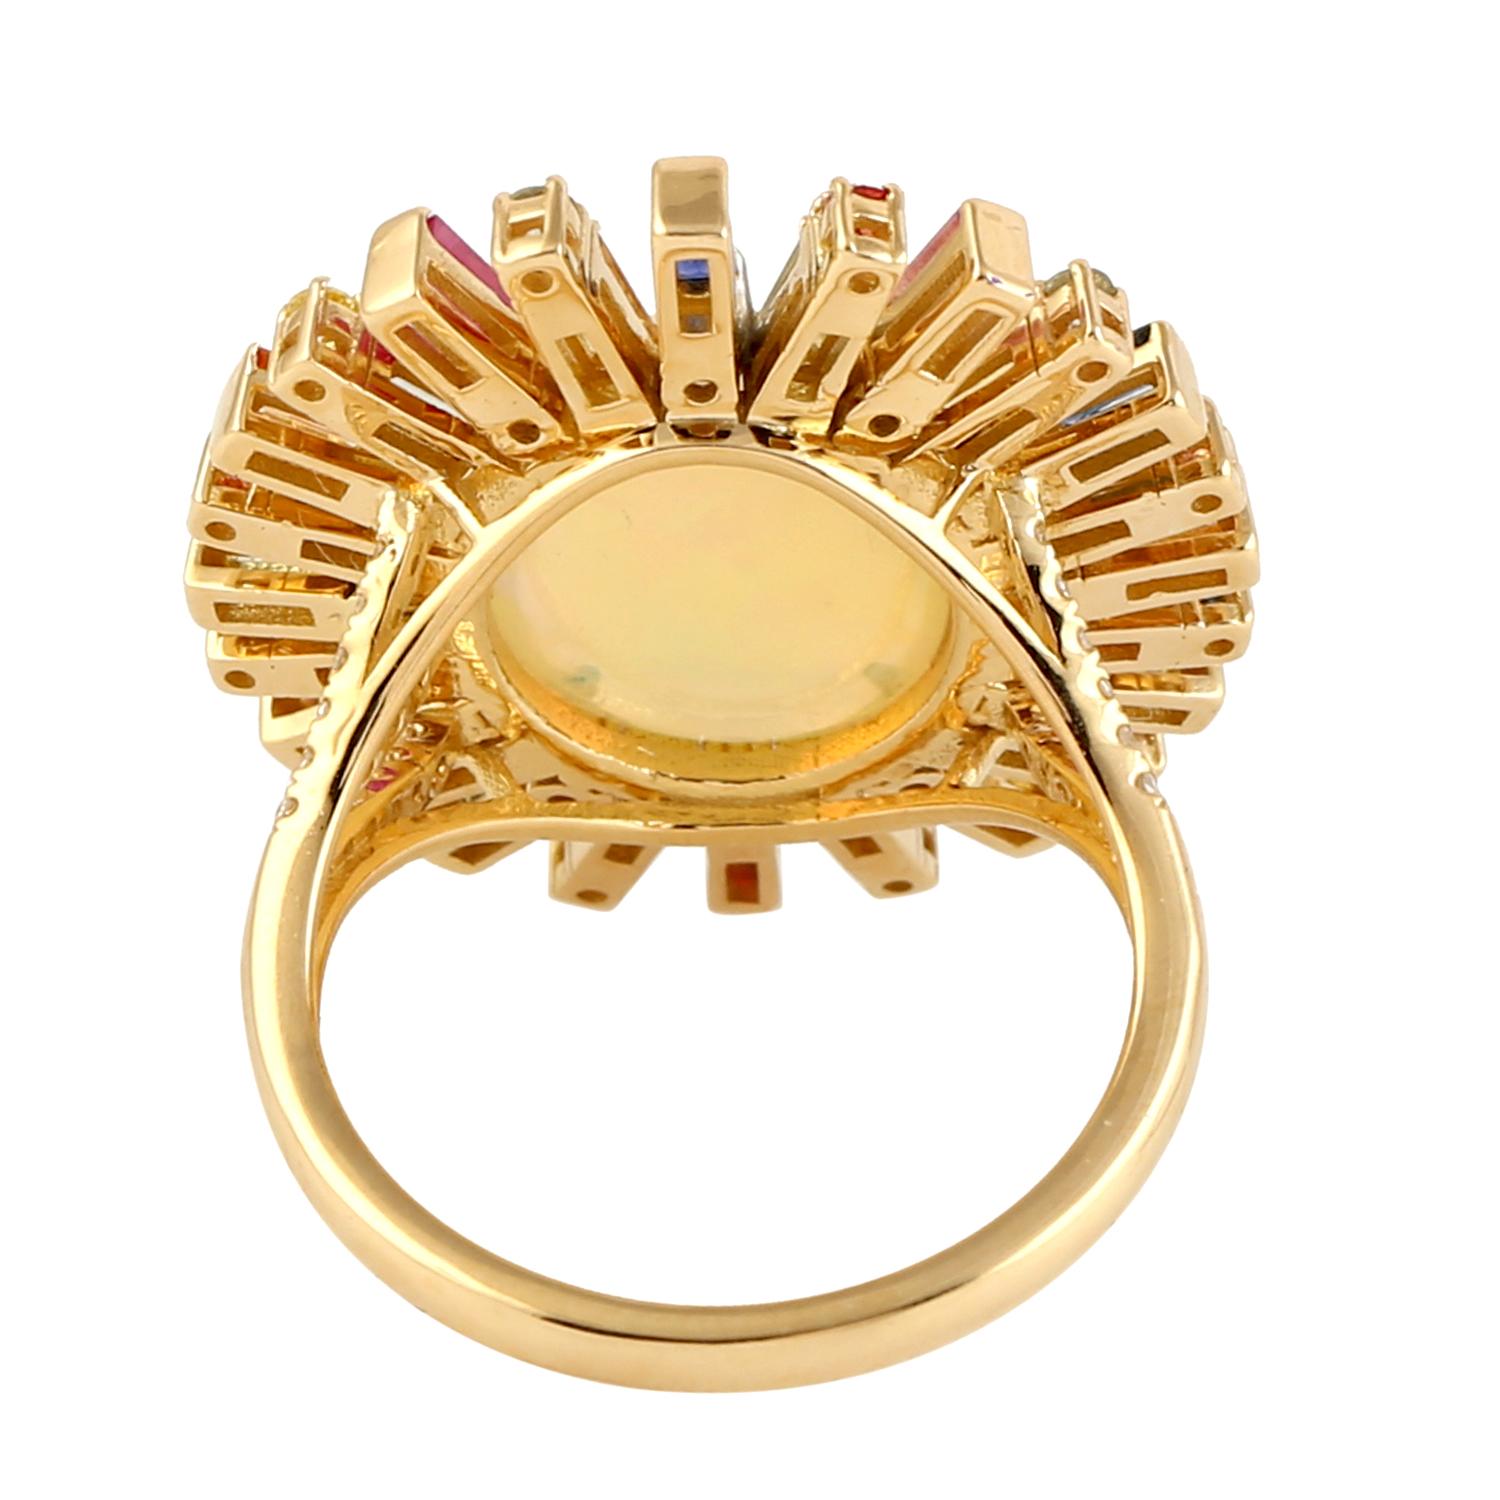 Dieser Ring wurde mit großer Sorgfalt aus 14-karätigem Gold gefertigt.  Er ist von Hand mit 4,53 Karat äthiopischem Opal, 2,07 Karat Saphir und 0,35 Karat funkelnden Diamanten besetzt. 

Der Ring hat die Größe 7 und kann auf Anfrage größer oder